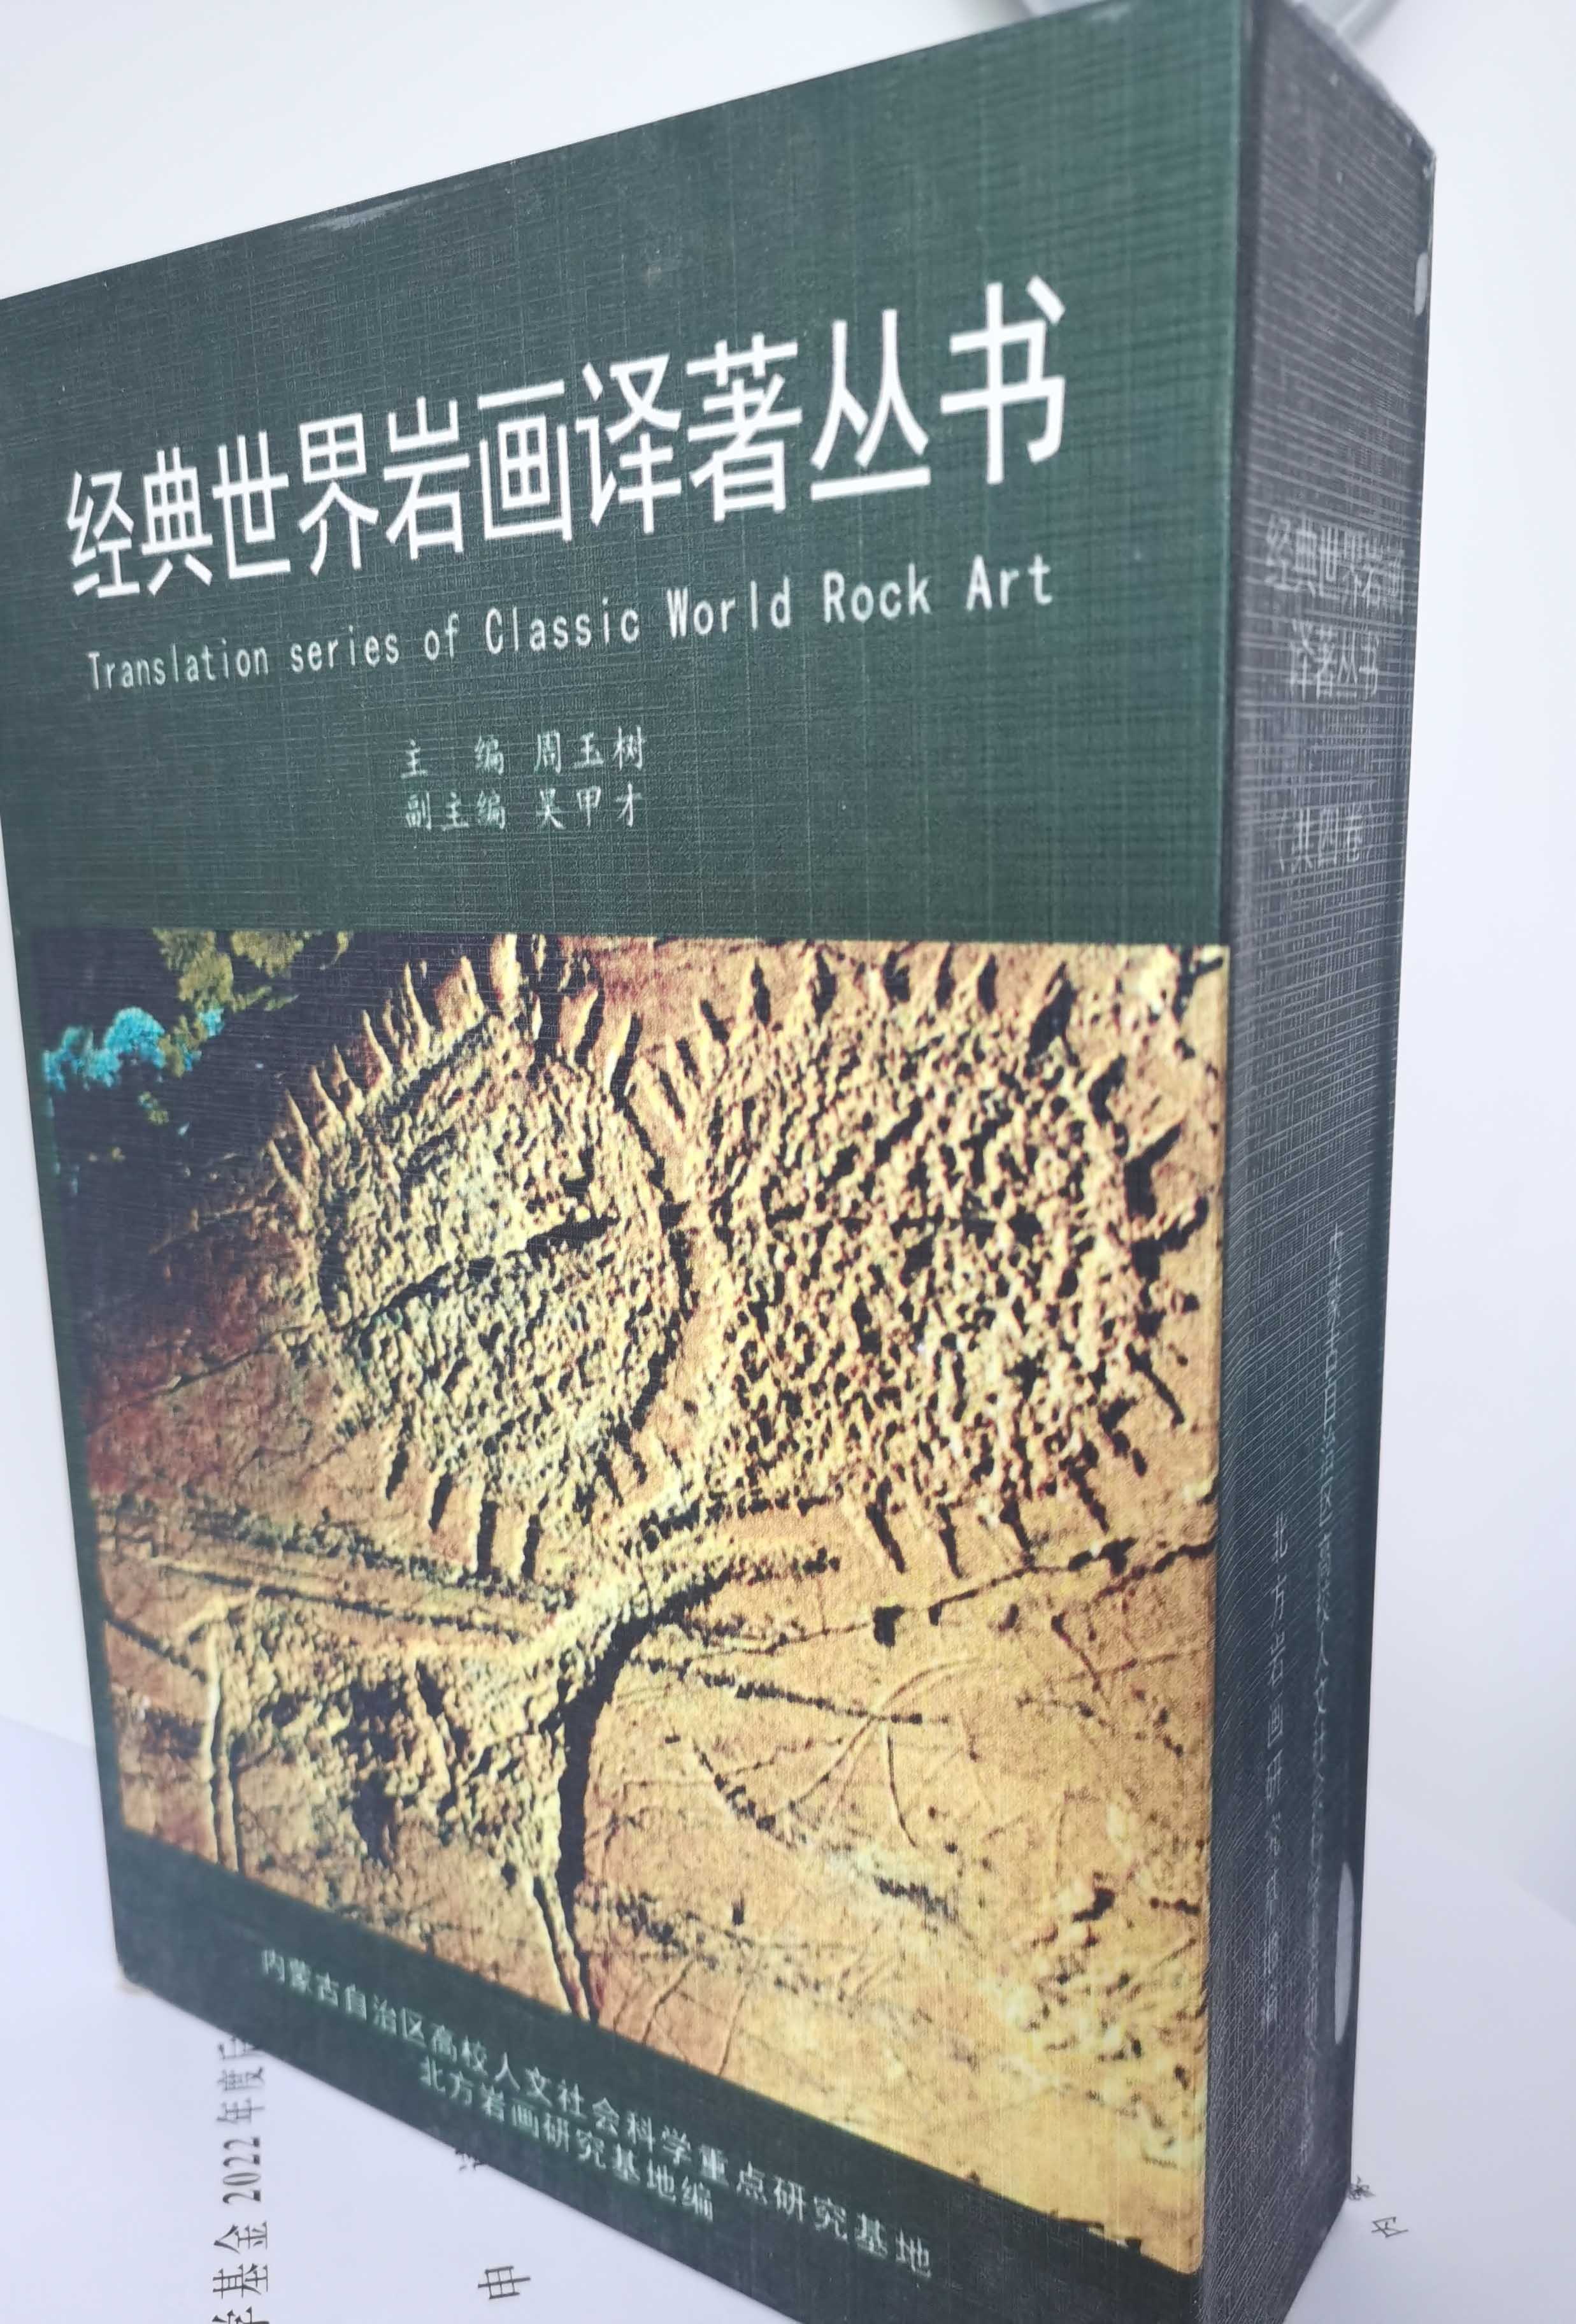 精装四卷本《经典世界岩画译著丛书》在国内首次出版